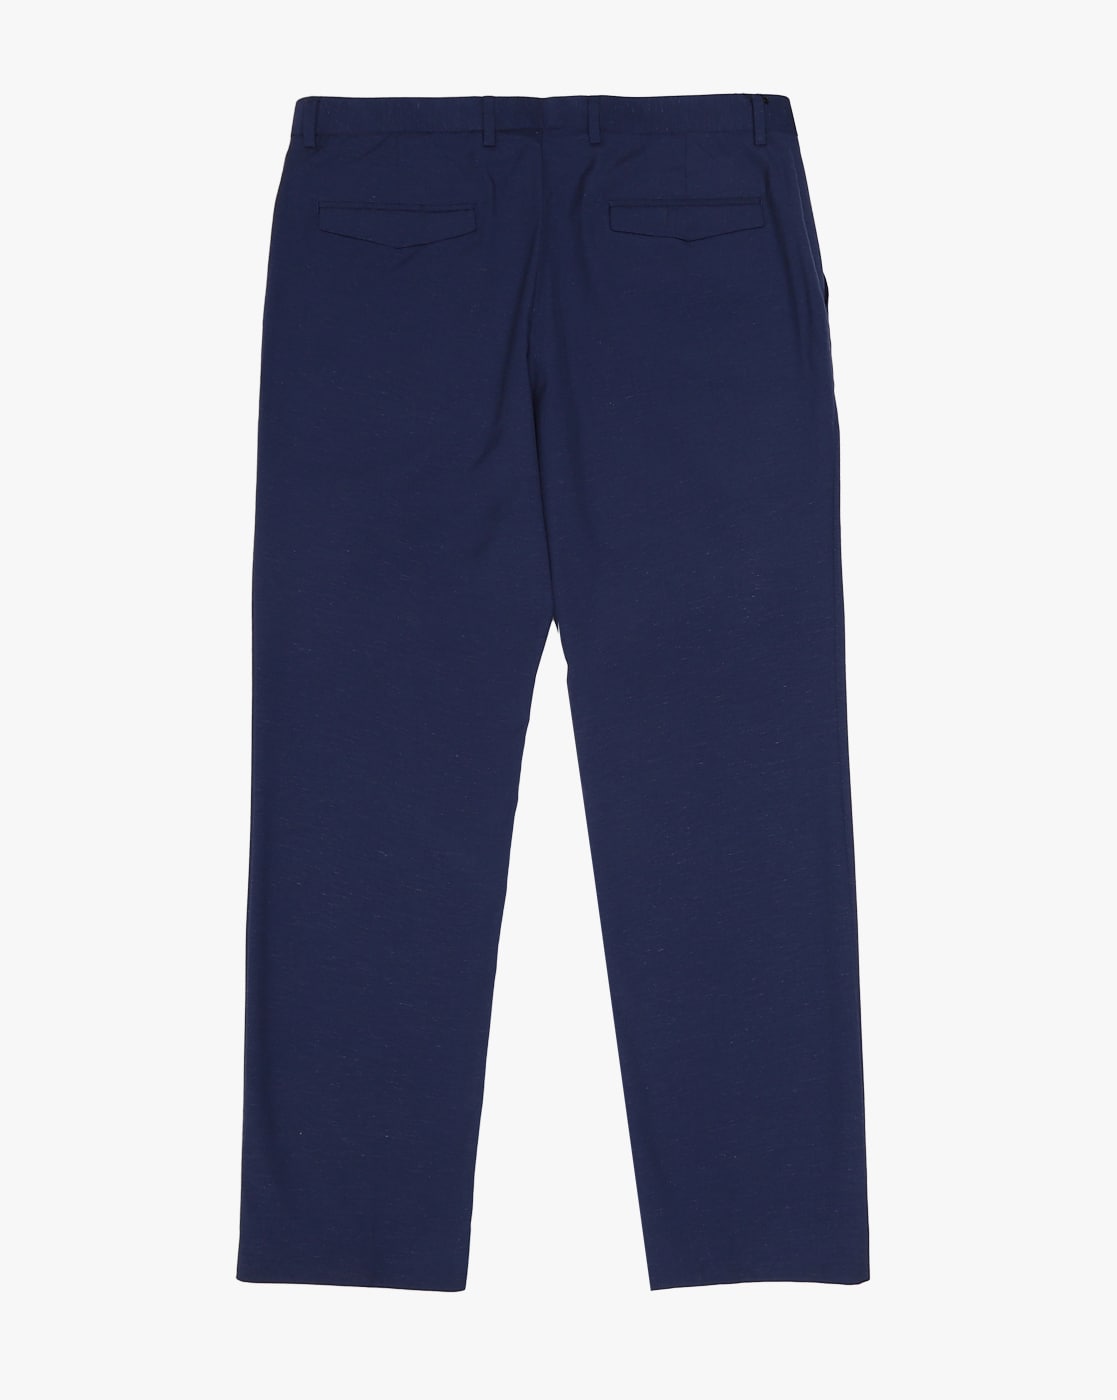 Blue Plain Men's Corporate Uniform Shirt And Navy Blue Trousers Fabric–  Uniform Sarees